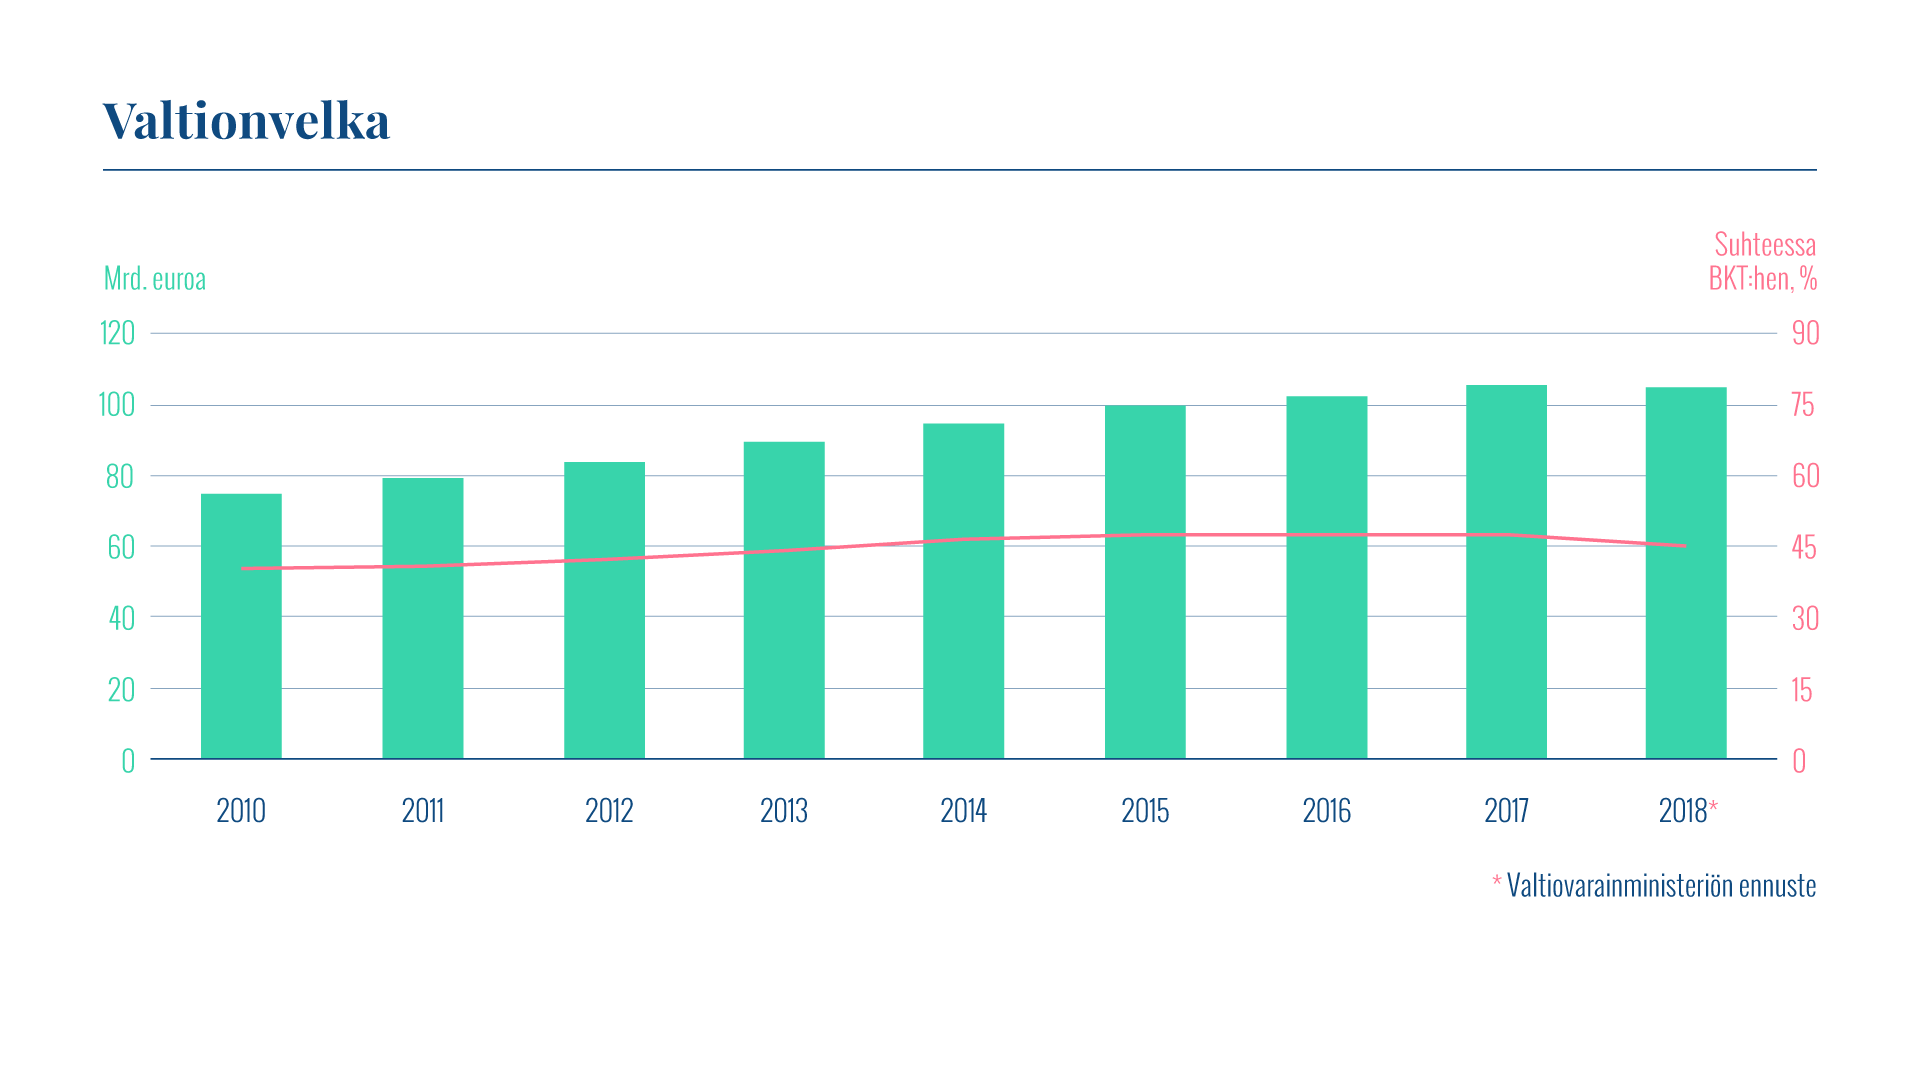 Kaaviossa esitetään Suomen valtionvelan määrä ja suhde bruttokansantuotteeseen vuosina 2010–2018. Valtionvelka oli 105,0 miljardia euroa vuoden 2018 lopussa. Velan suhde bruttokansantuotteeseen oli 45 prosenttia.